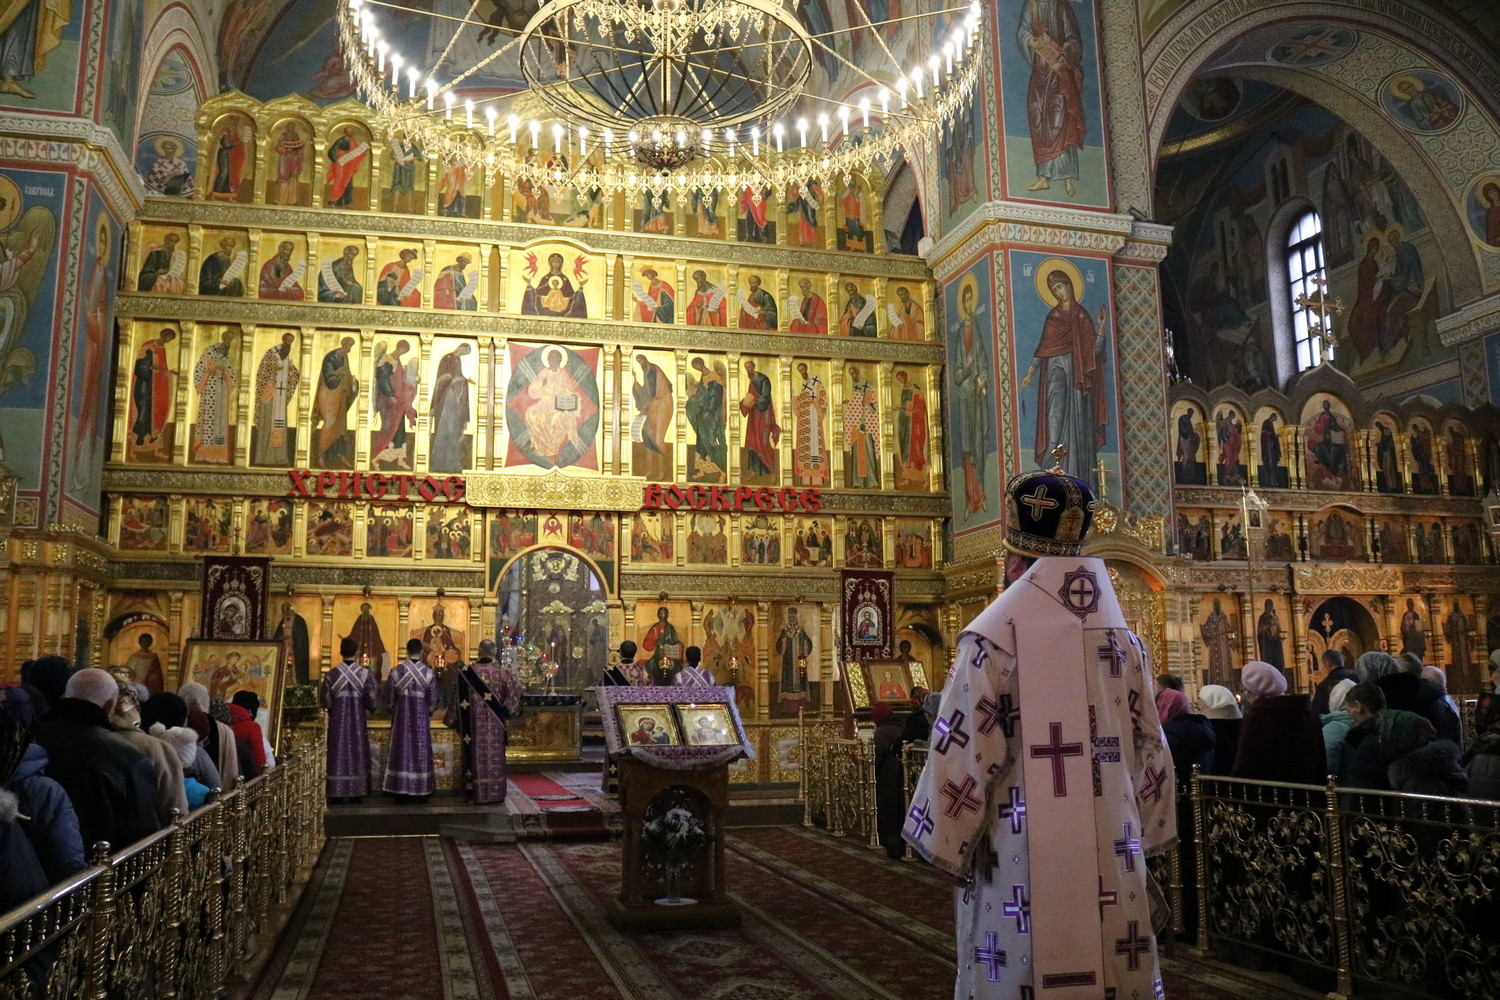 Спасо-Преображенский кафедральный собор Губкин